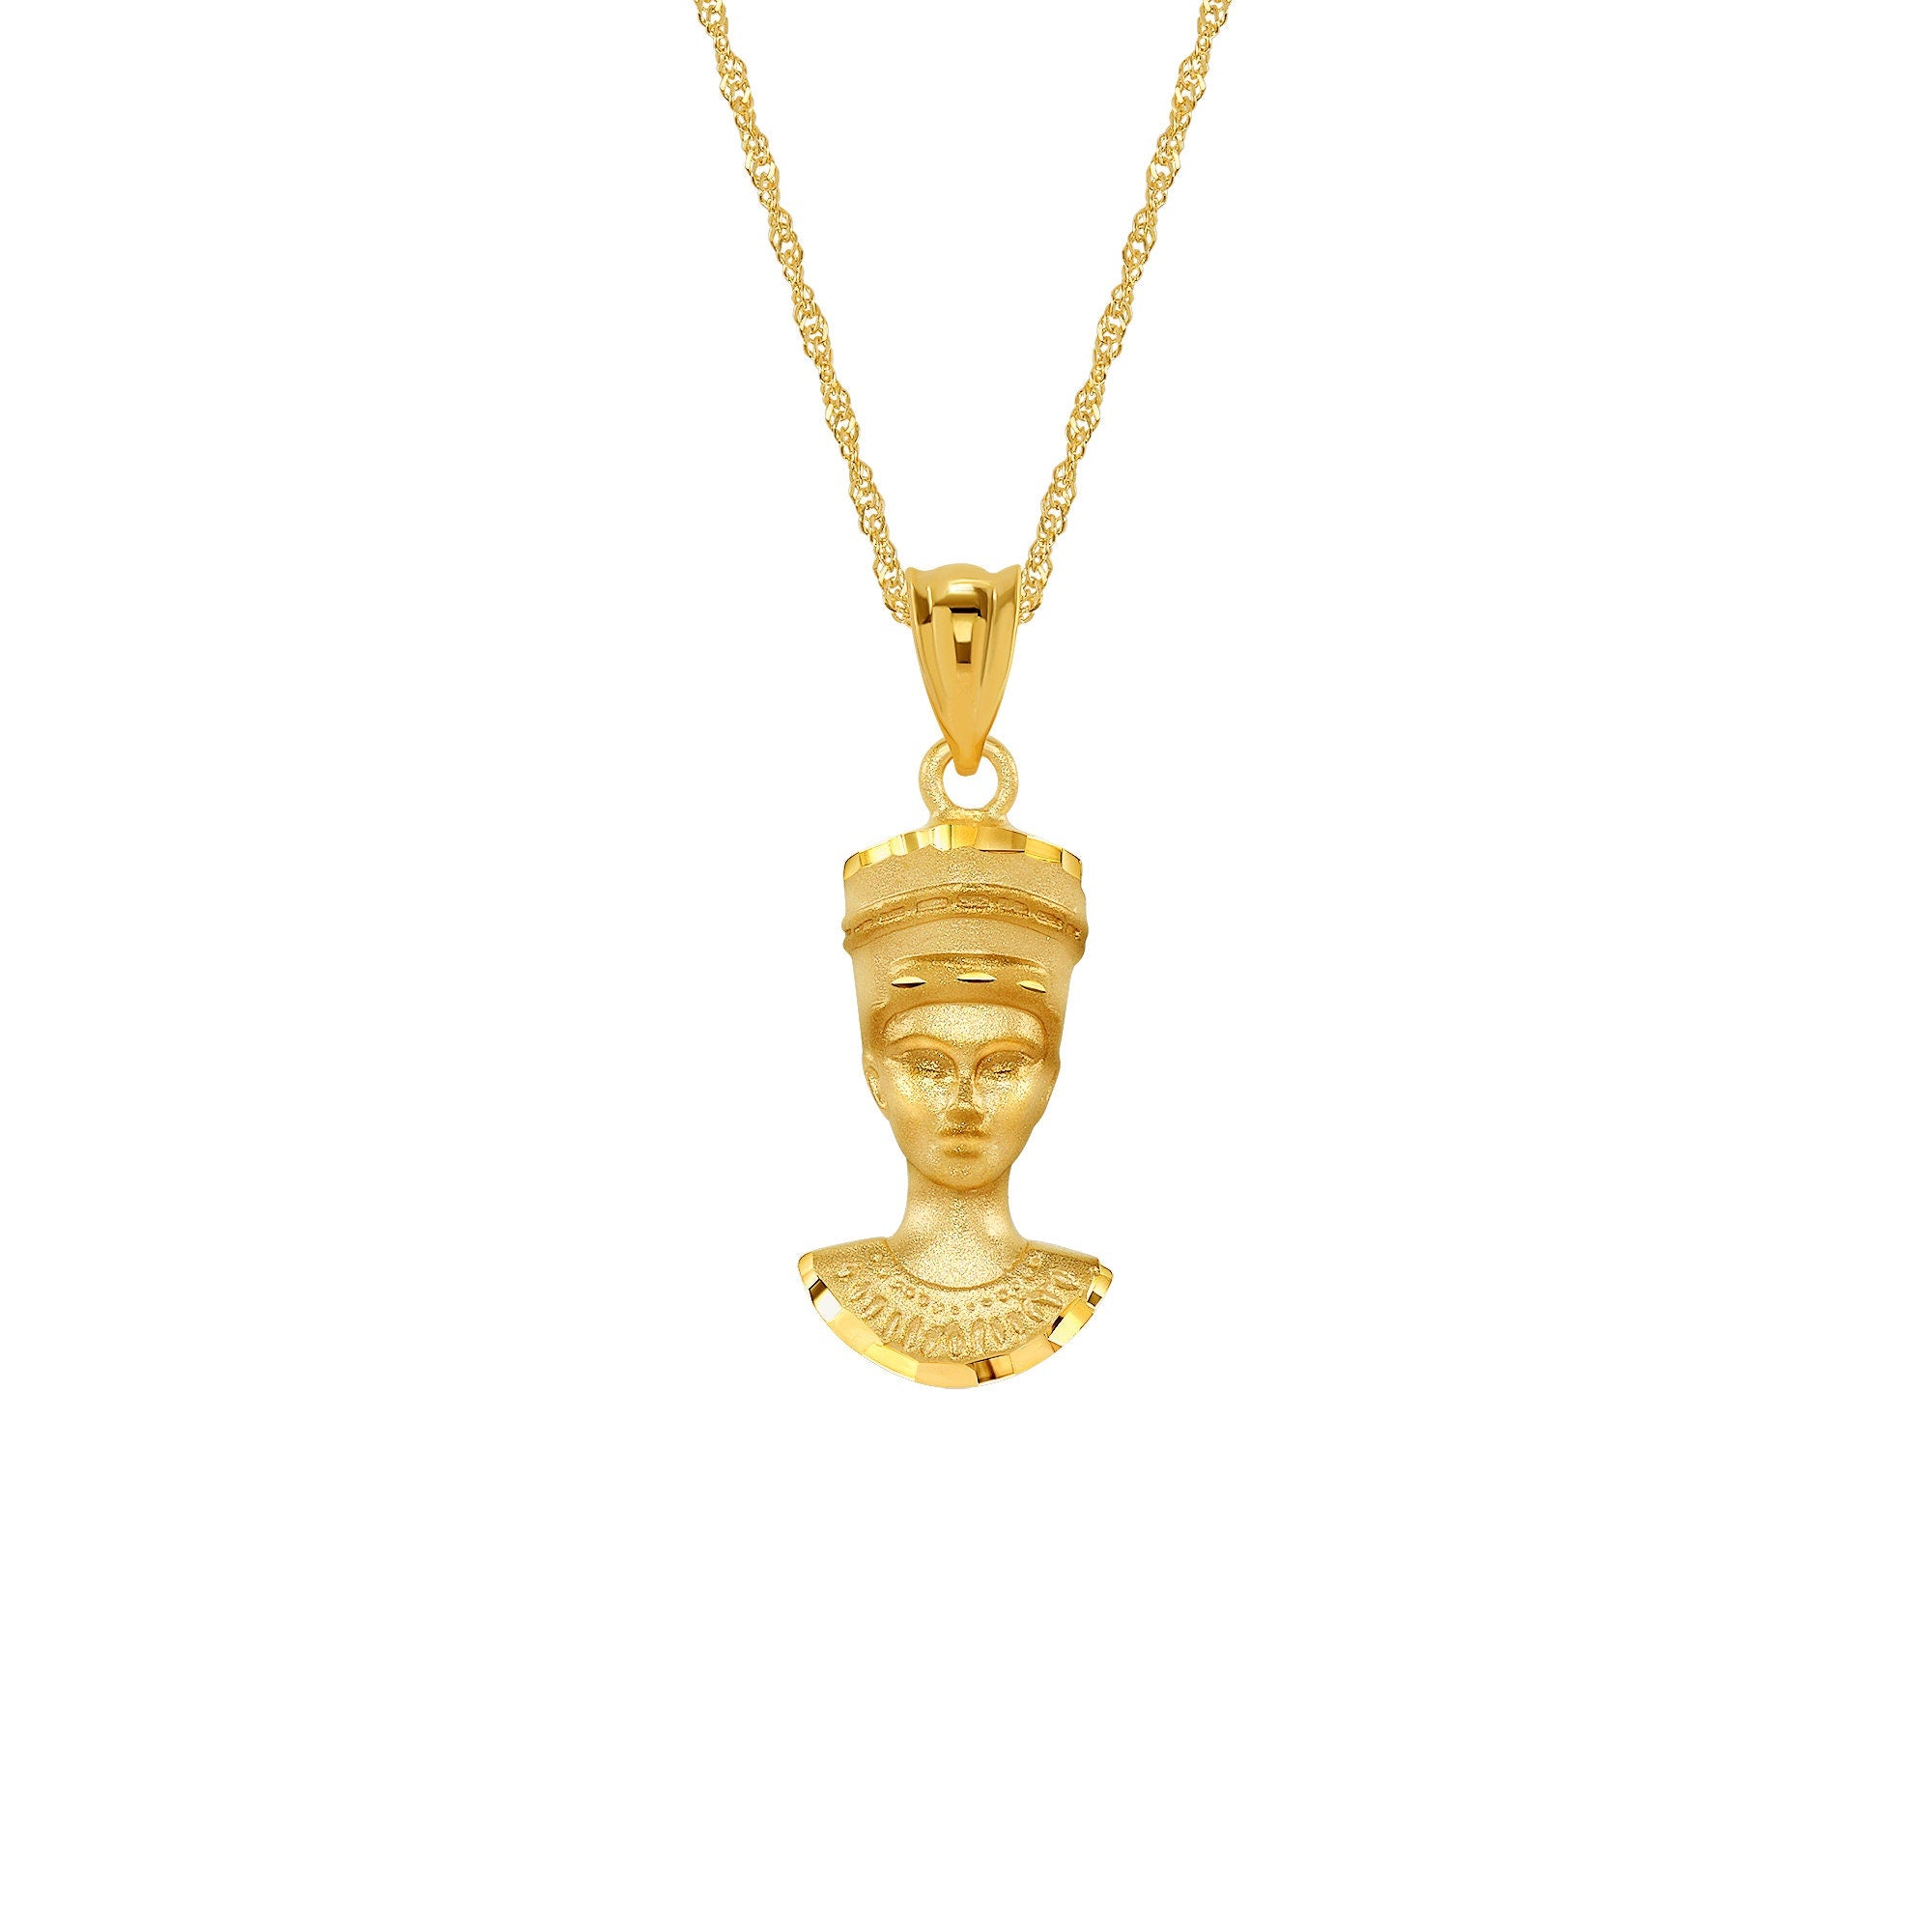 14k solid gold pharoah pendant. Egyptian pharoah pendant on 18" chain